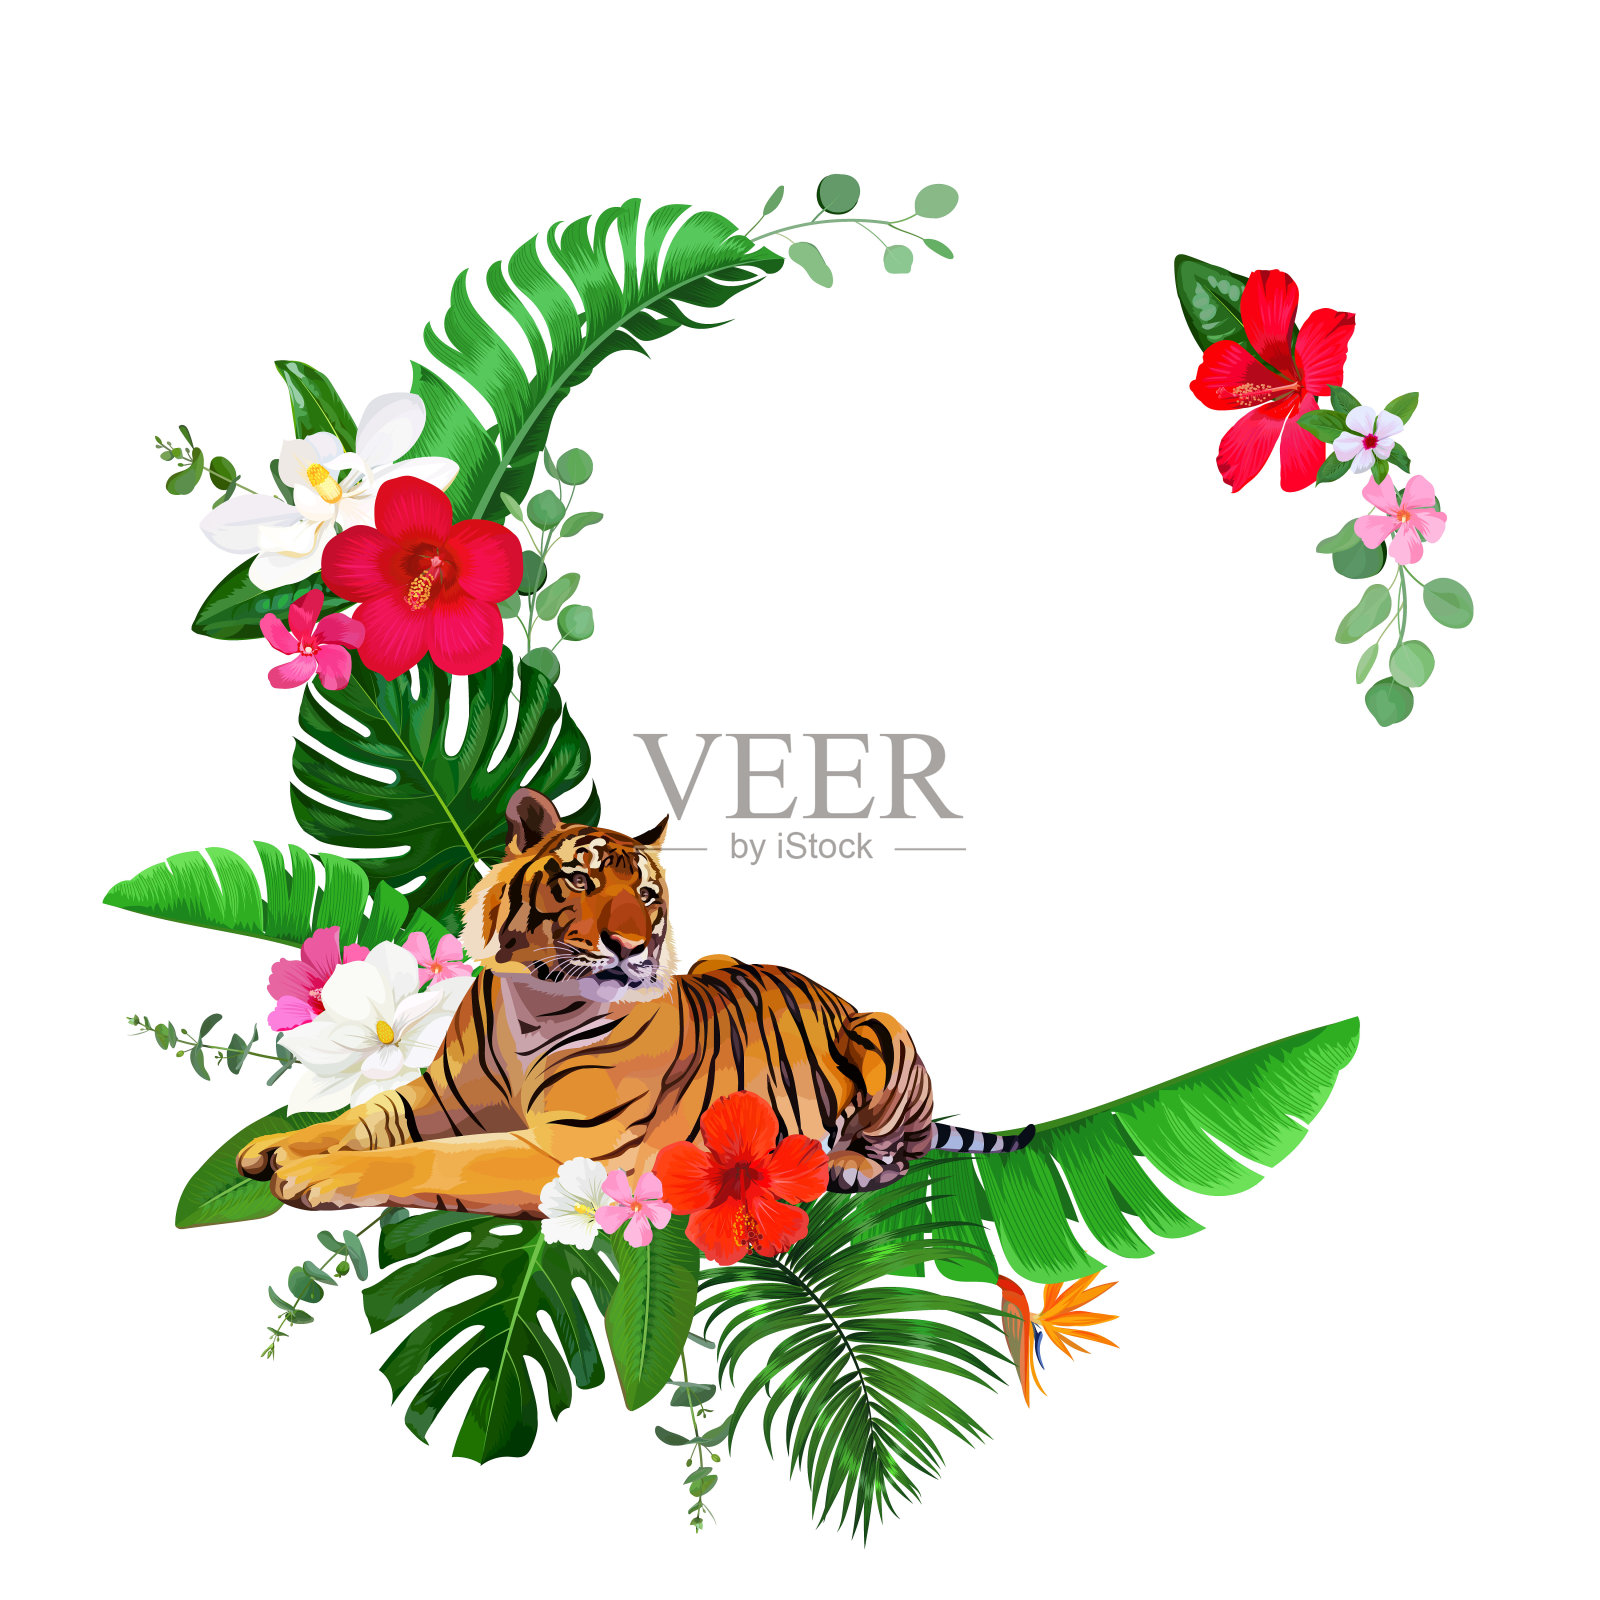 孟加拉虎和木槿花组成的热带花环插画图片素材